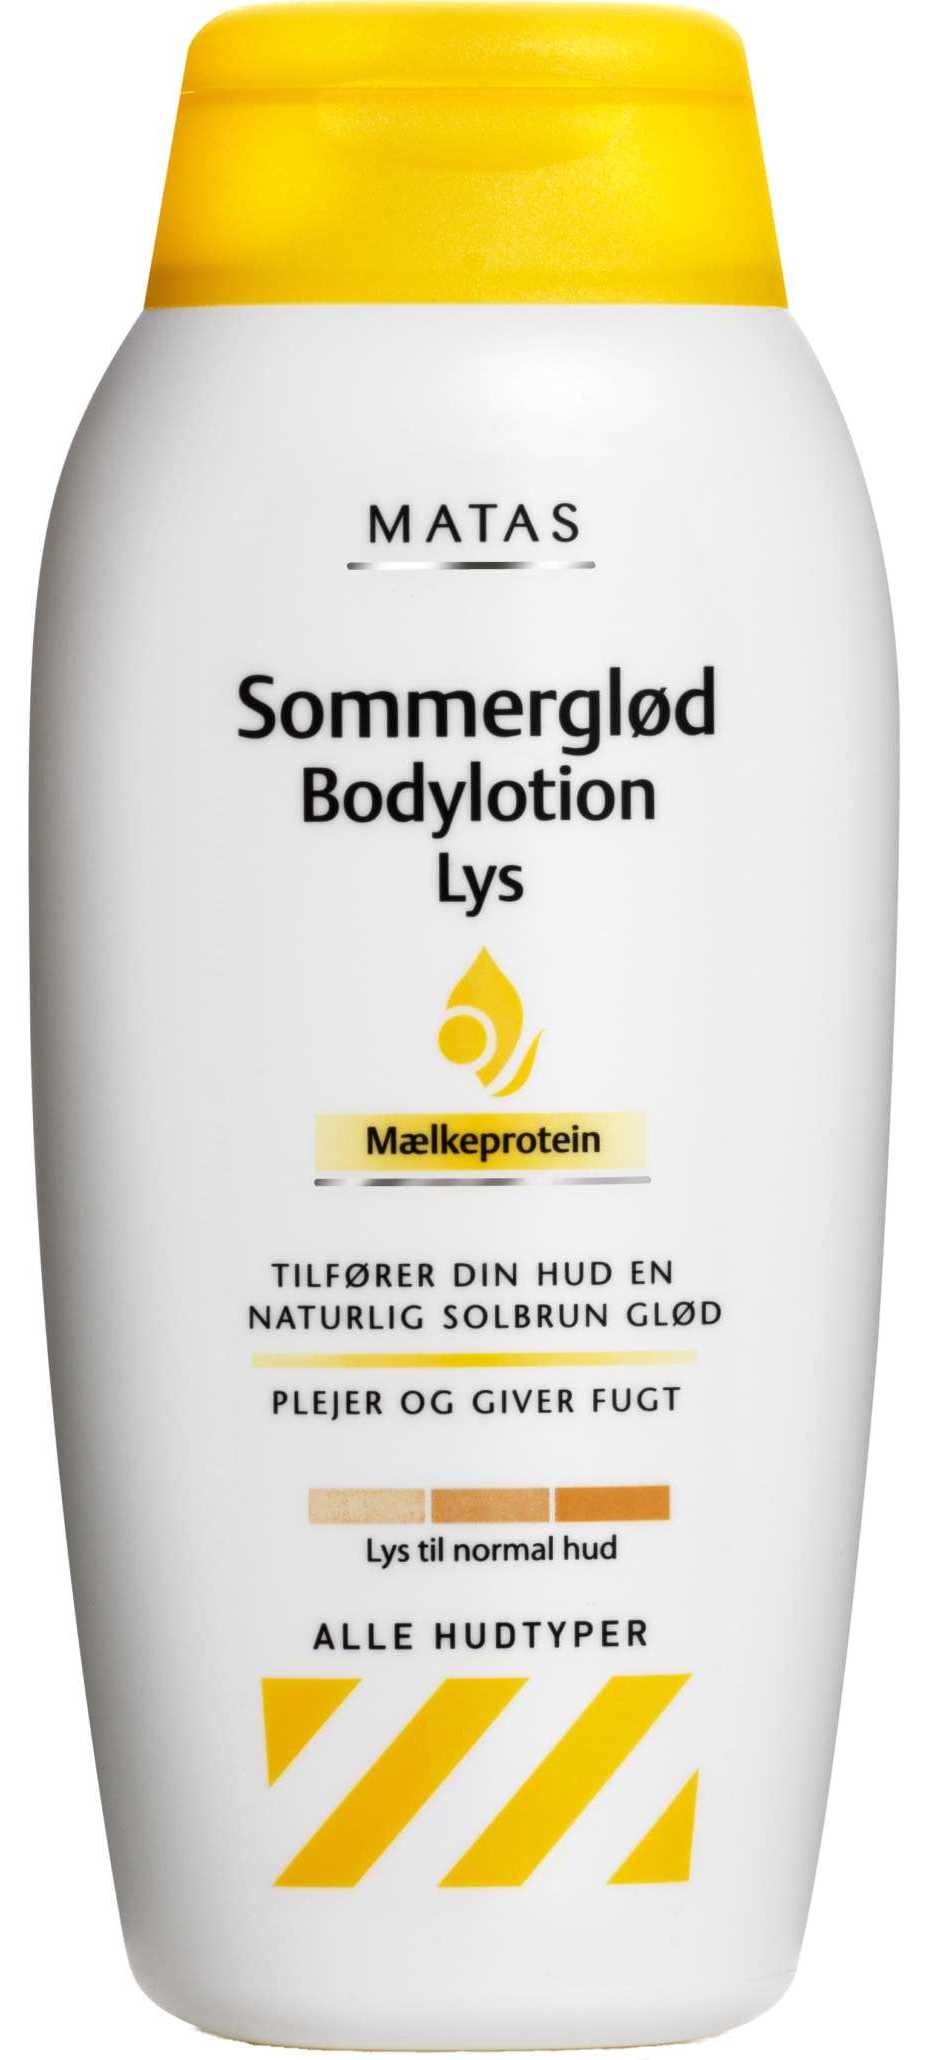 Matas-Sommergloed-Bodylotion-lys-500-ml-horizontal